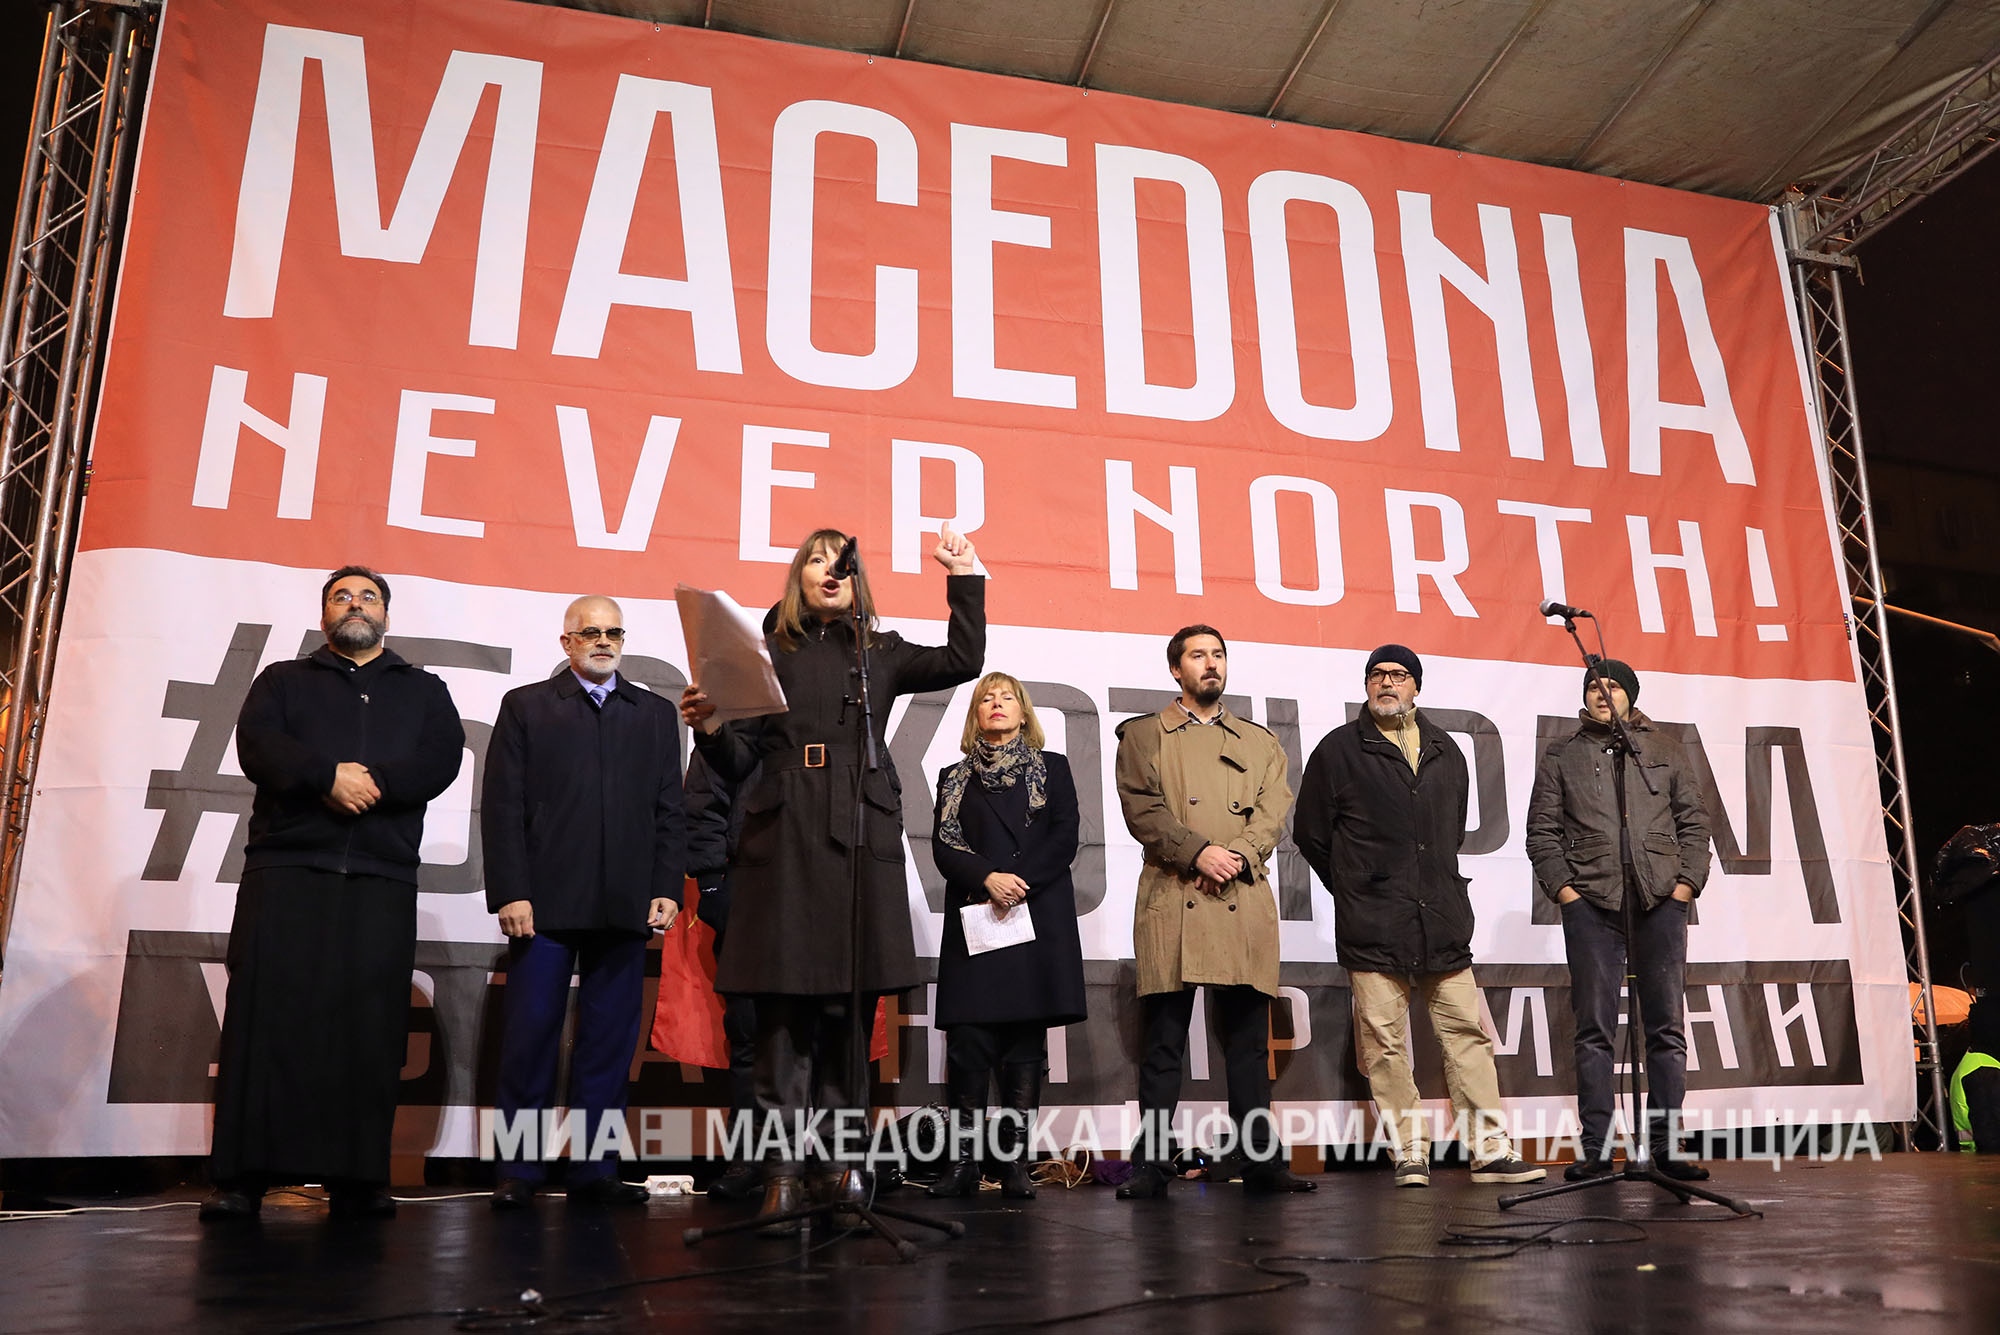 Οι Σκοπιανοί διασύρουν την Ελλάδα μέχρι και στην…Κίνα : «Ποτέ Βόρεια – Μόνο Μακεδονία» (βίντεο)